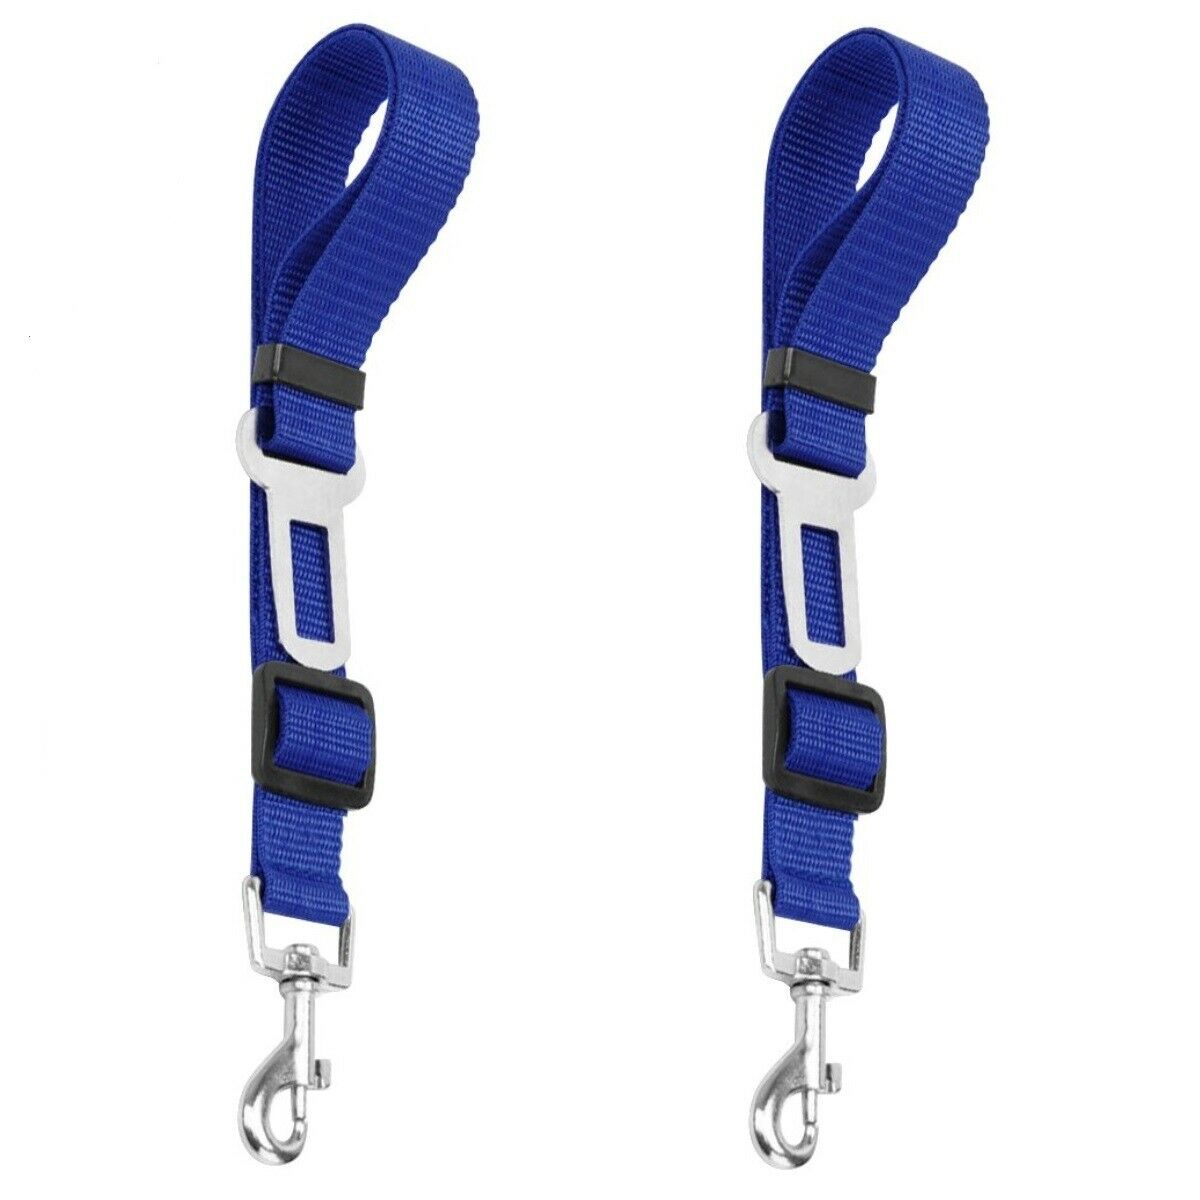 2 Pack Cat Dog Pet Safety Seat belt Clip for Car Vehicle Adjustable Harness Lead belt